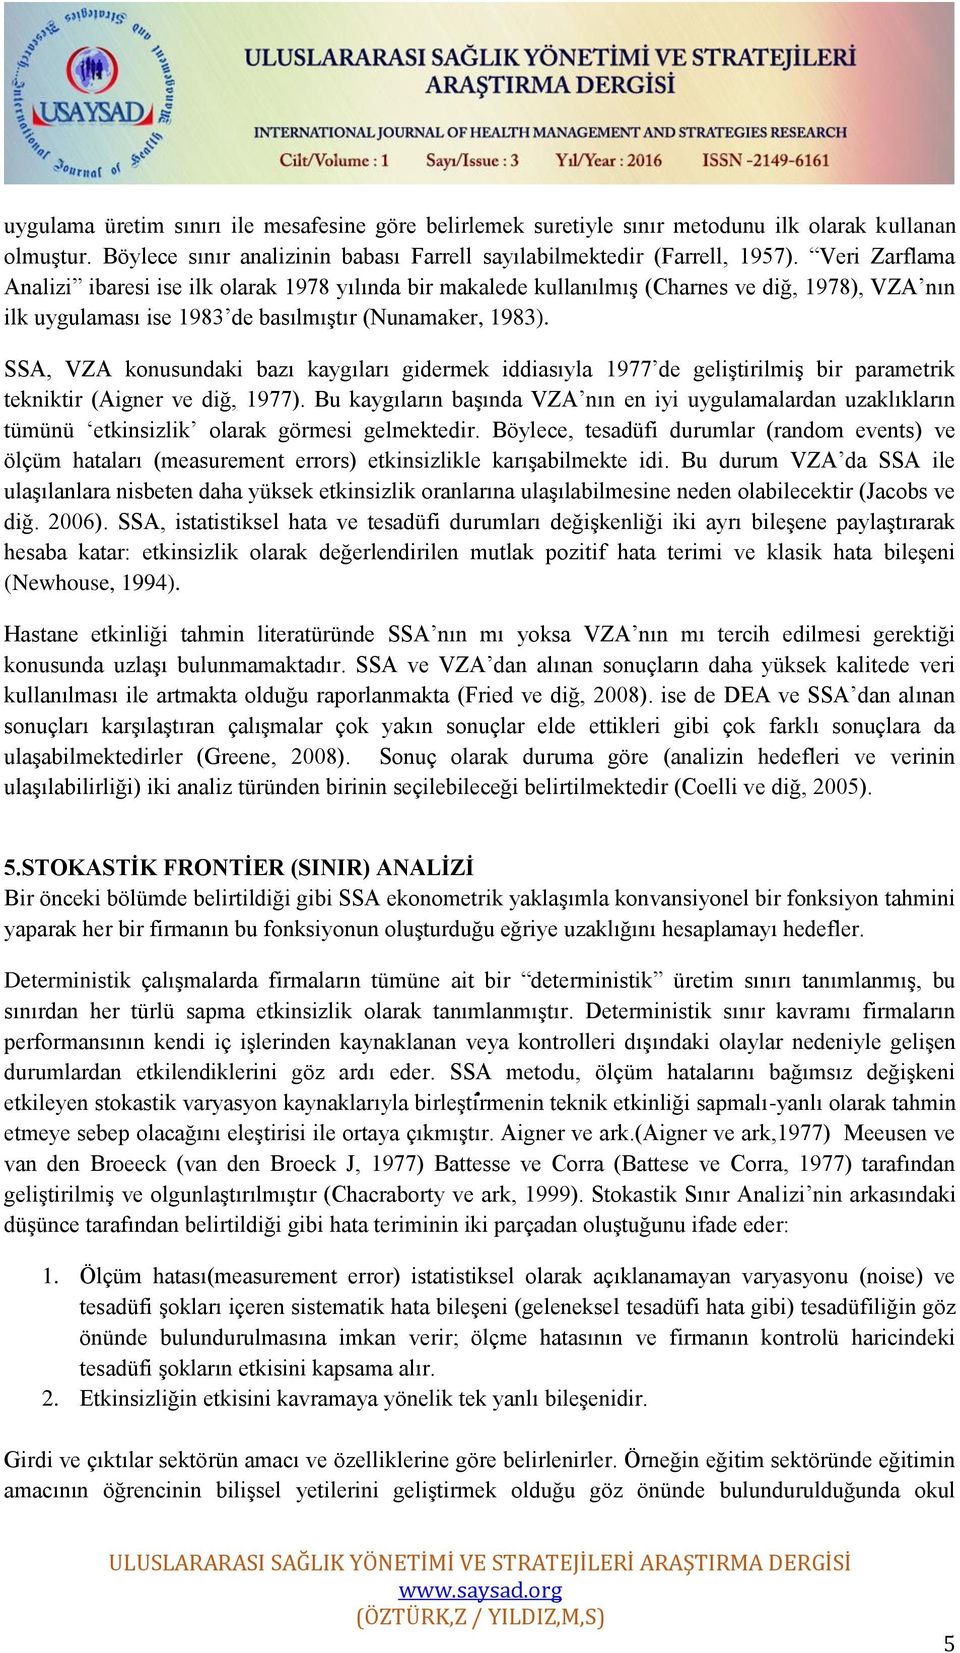 SSA, VZA konusundaki bazı kaygıları gidermek iddiasıyla 1977 de geliştirilmiş bir parametrik tekniktir (Aigner ve diğ, 1977).